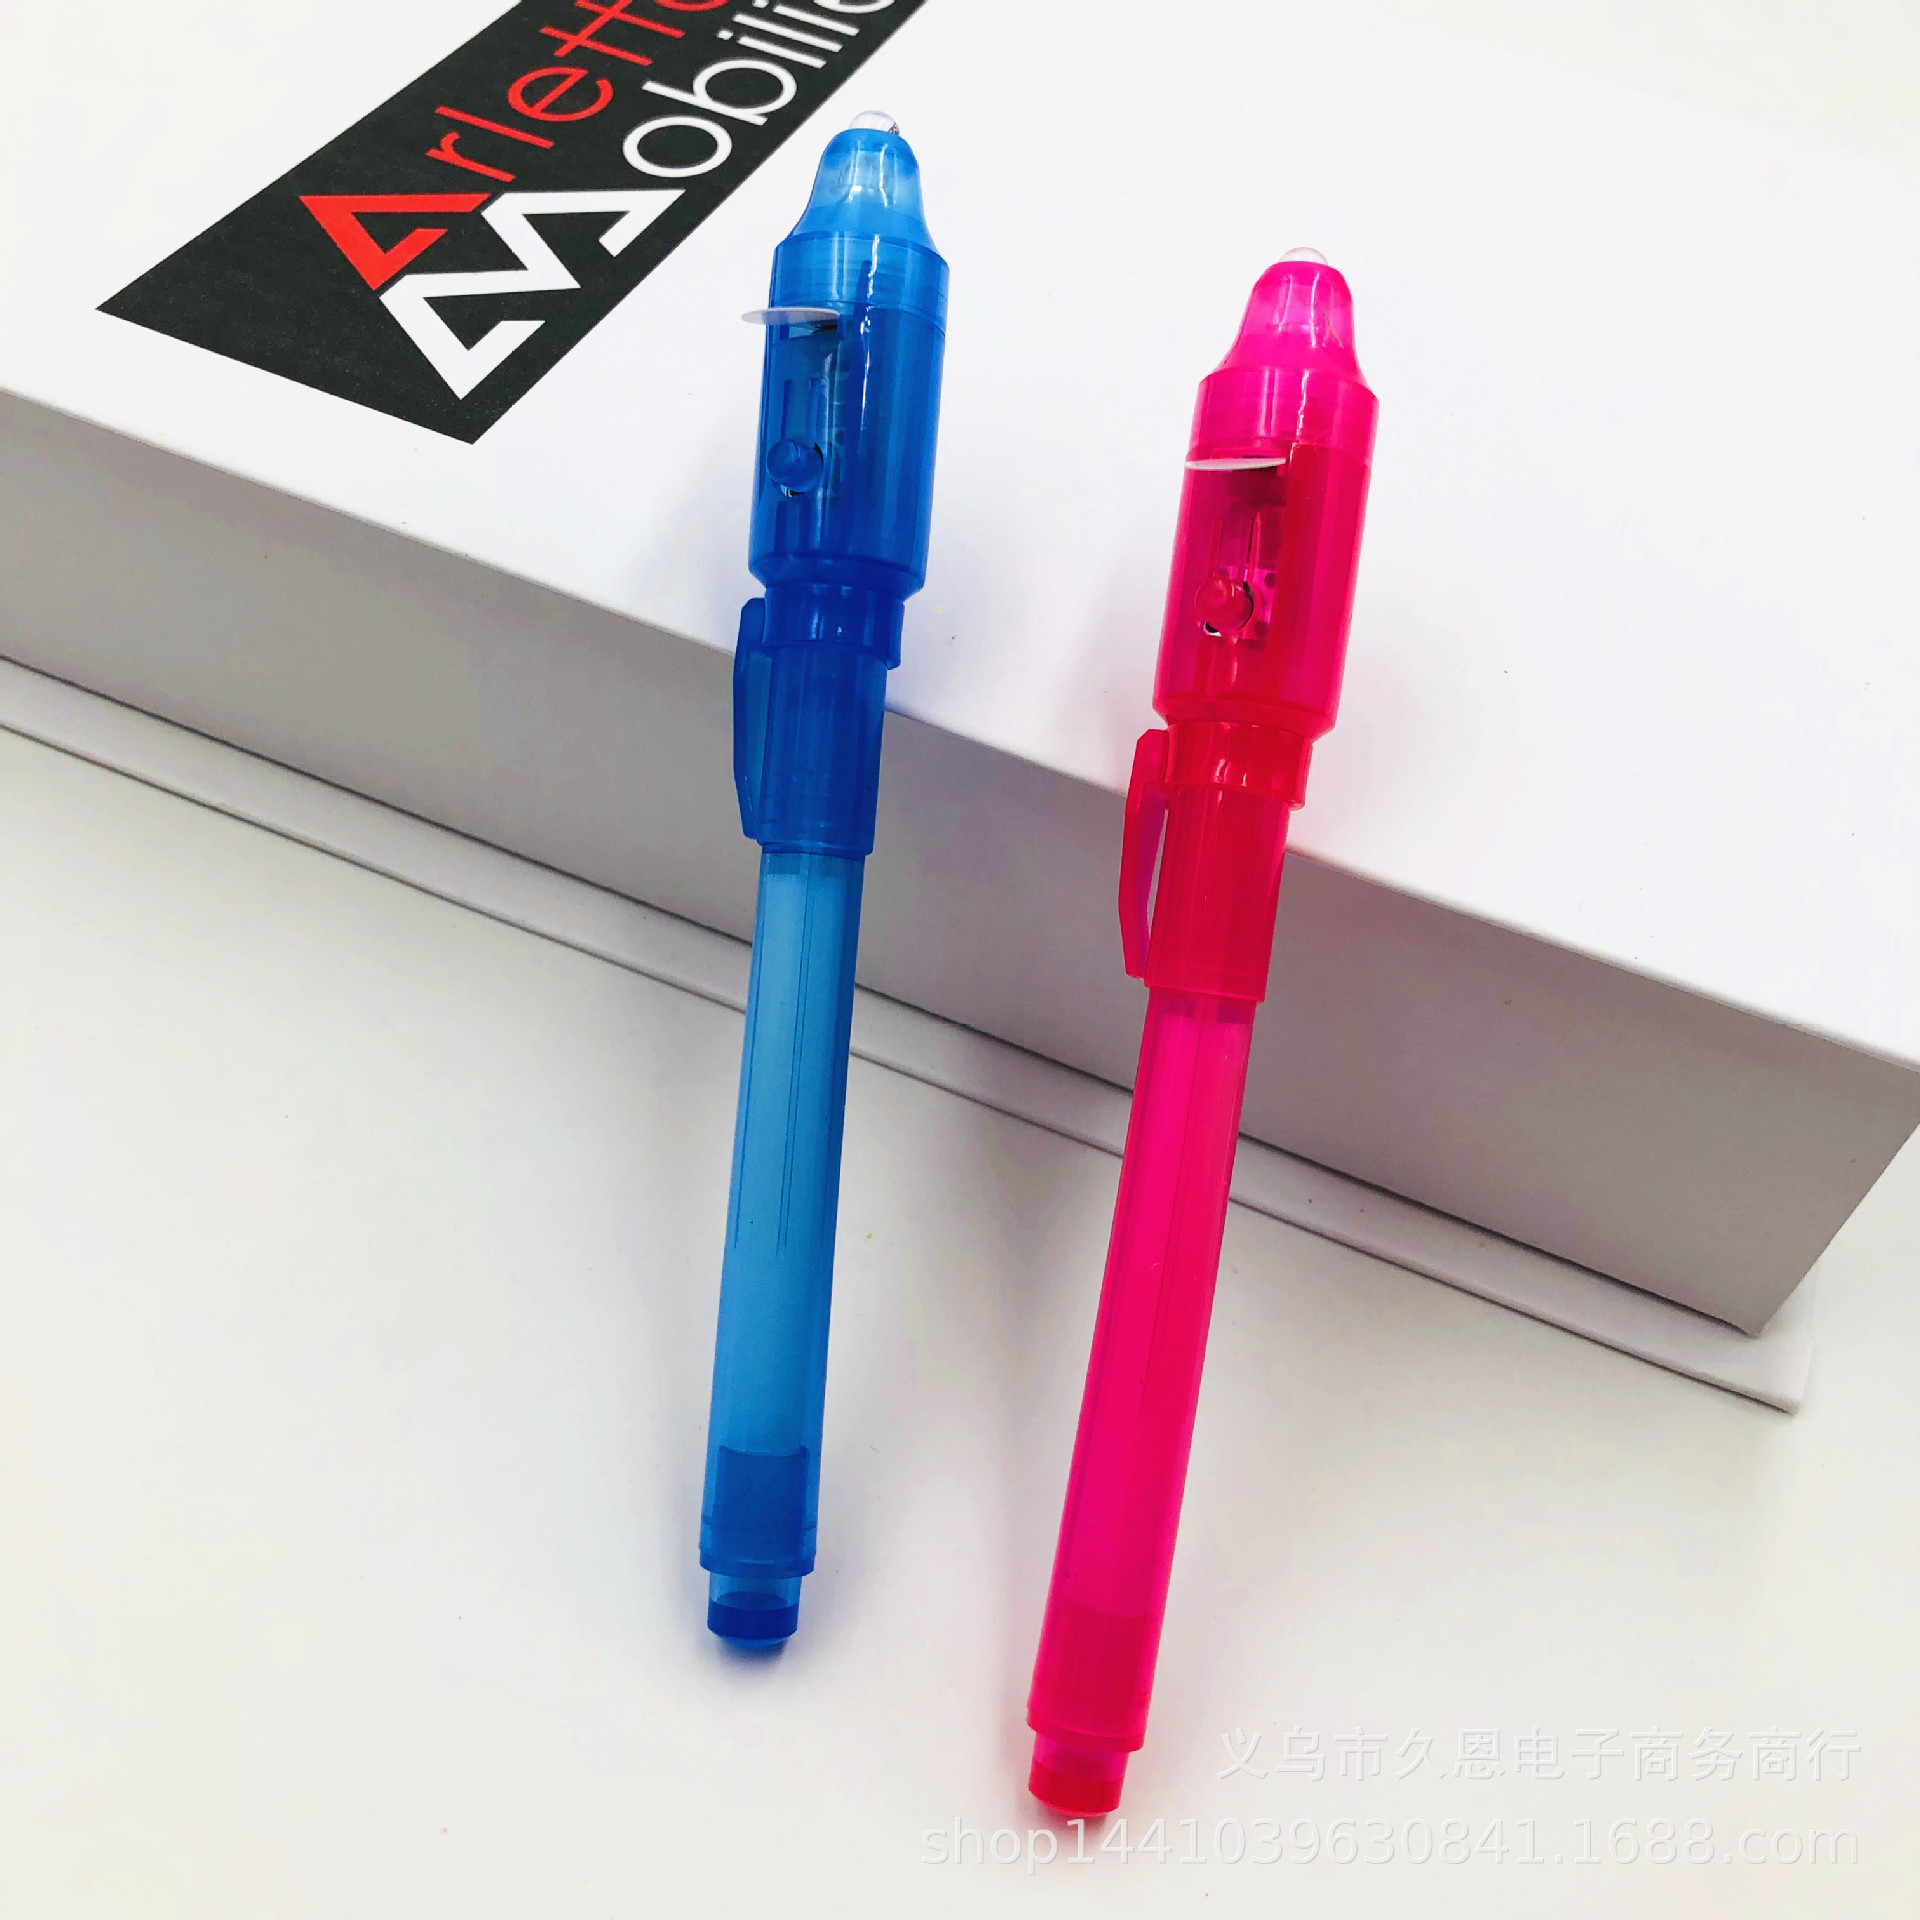 紫外线环保验钞笔魔术隐形保密笔UV笔多功能塑料大头笔亚马逊爆款产品图